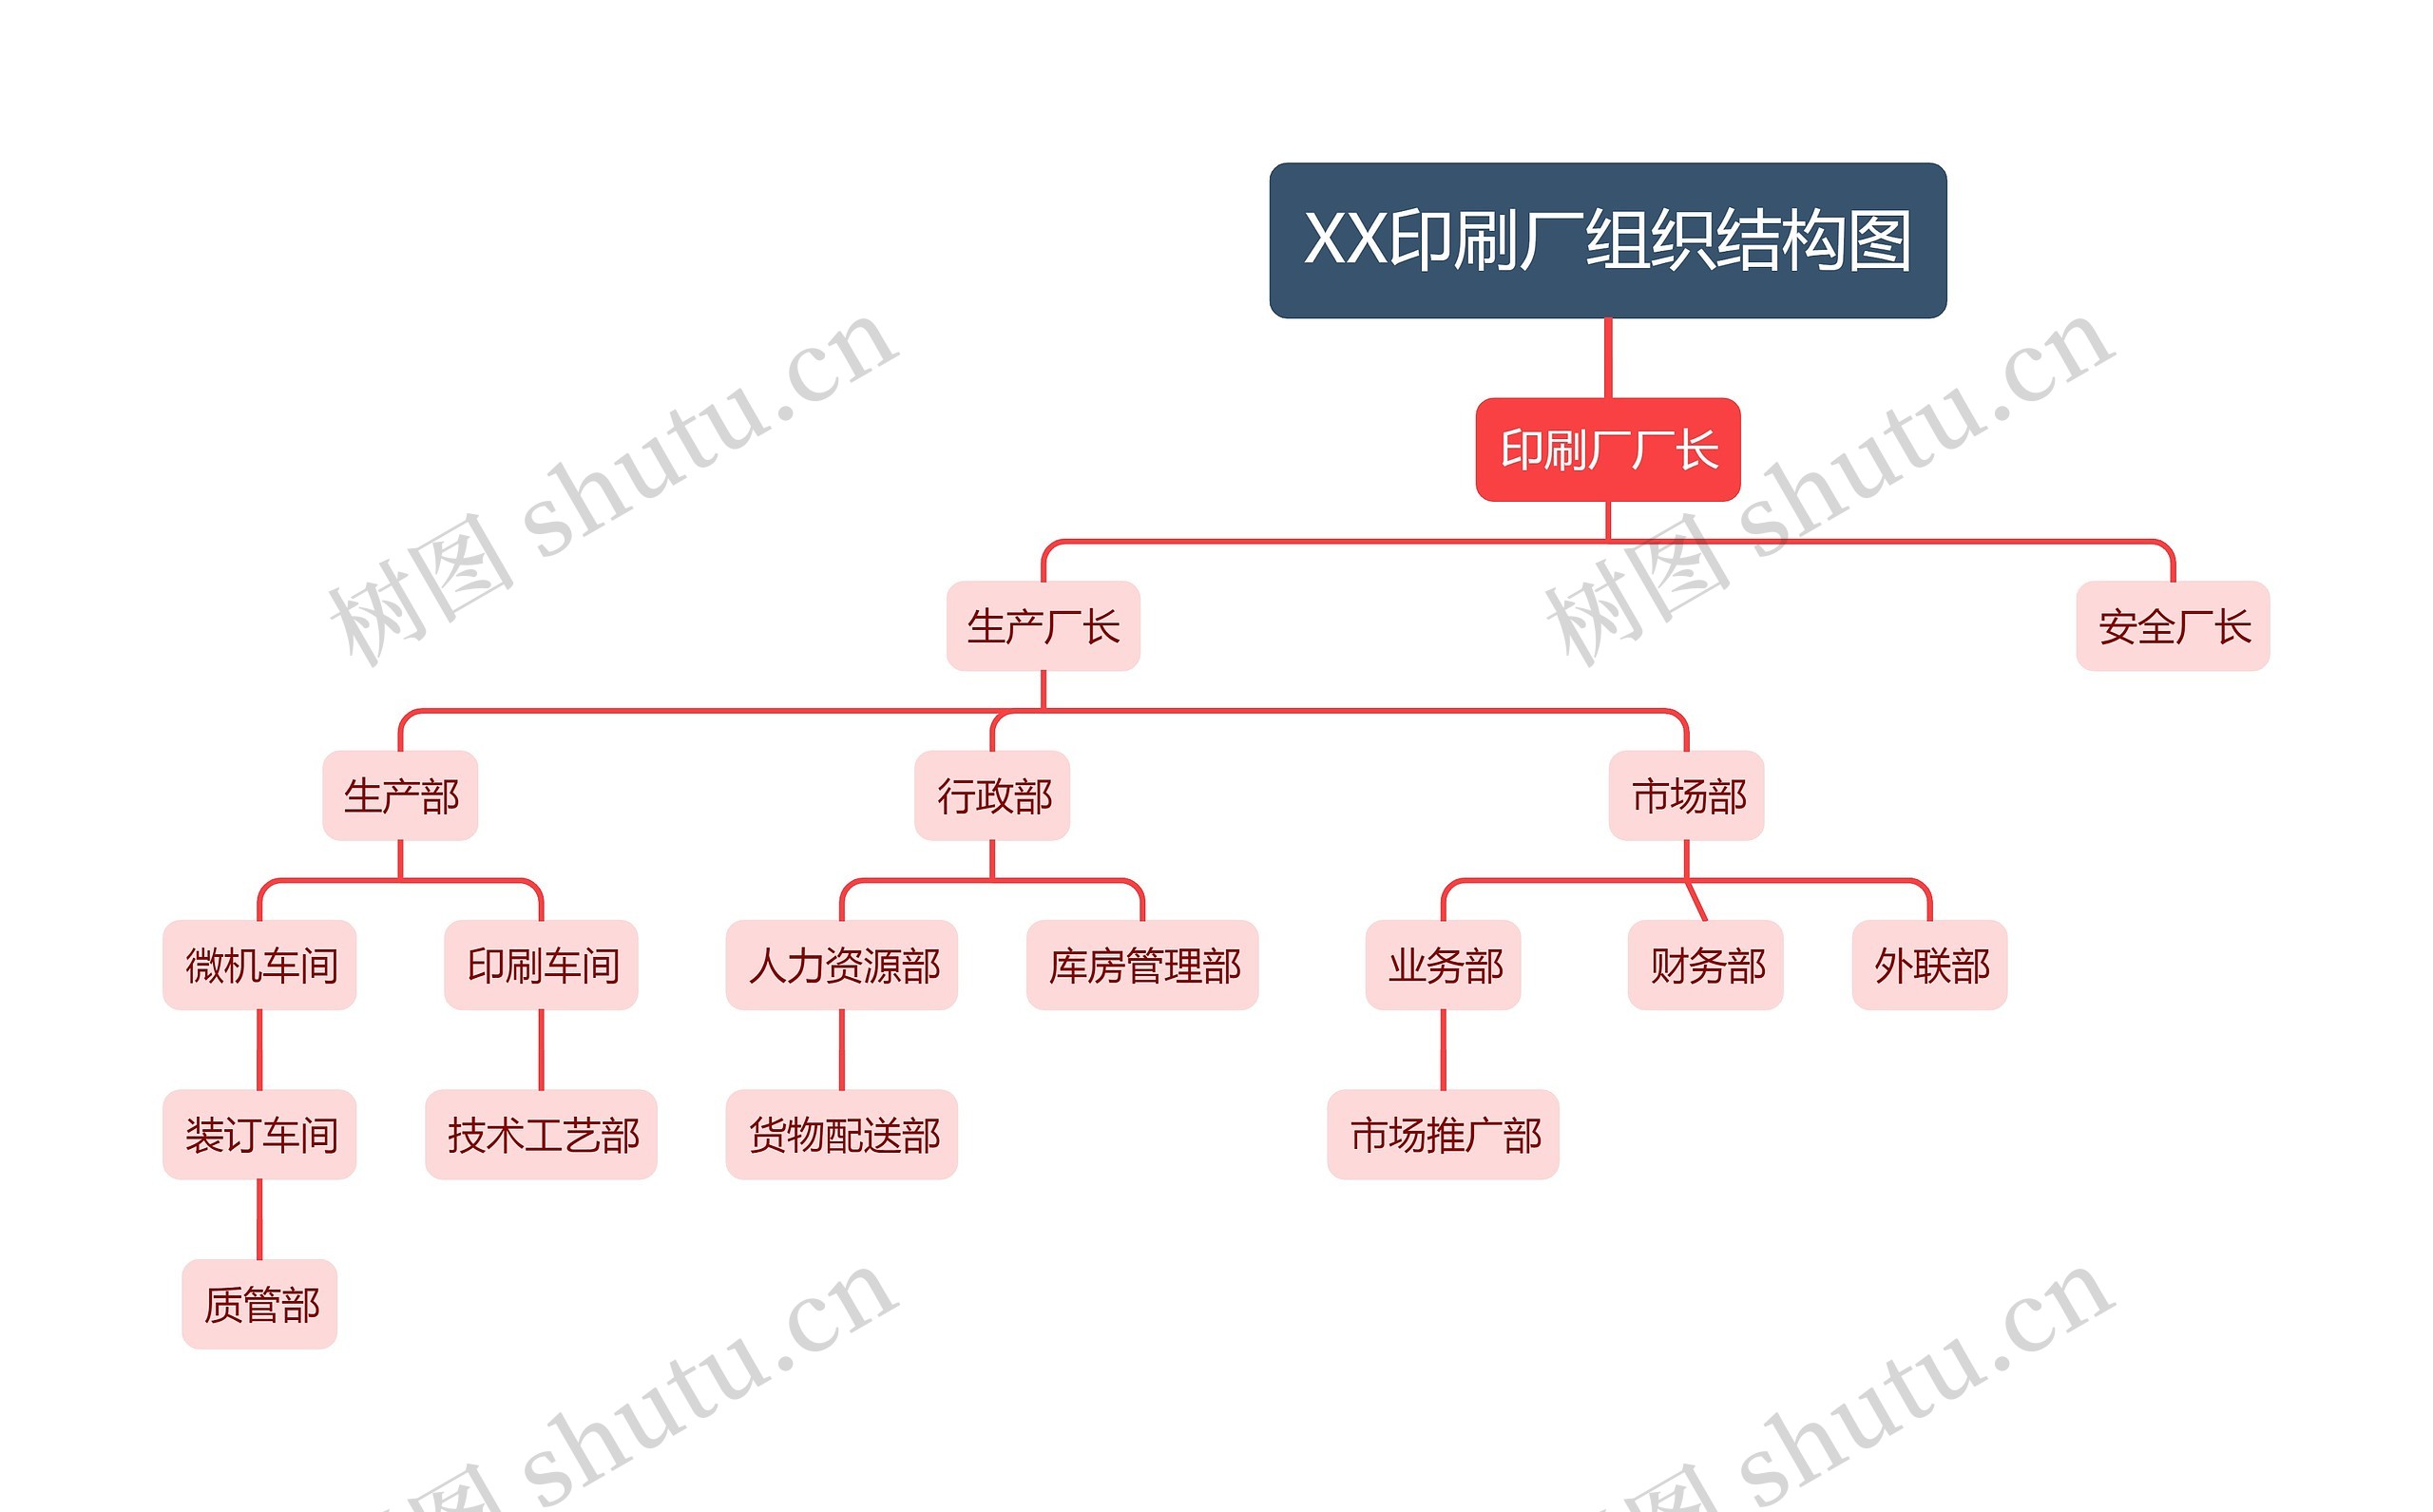 XX印刷厂组织结构图